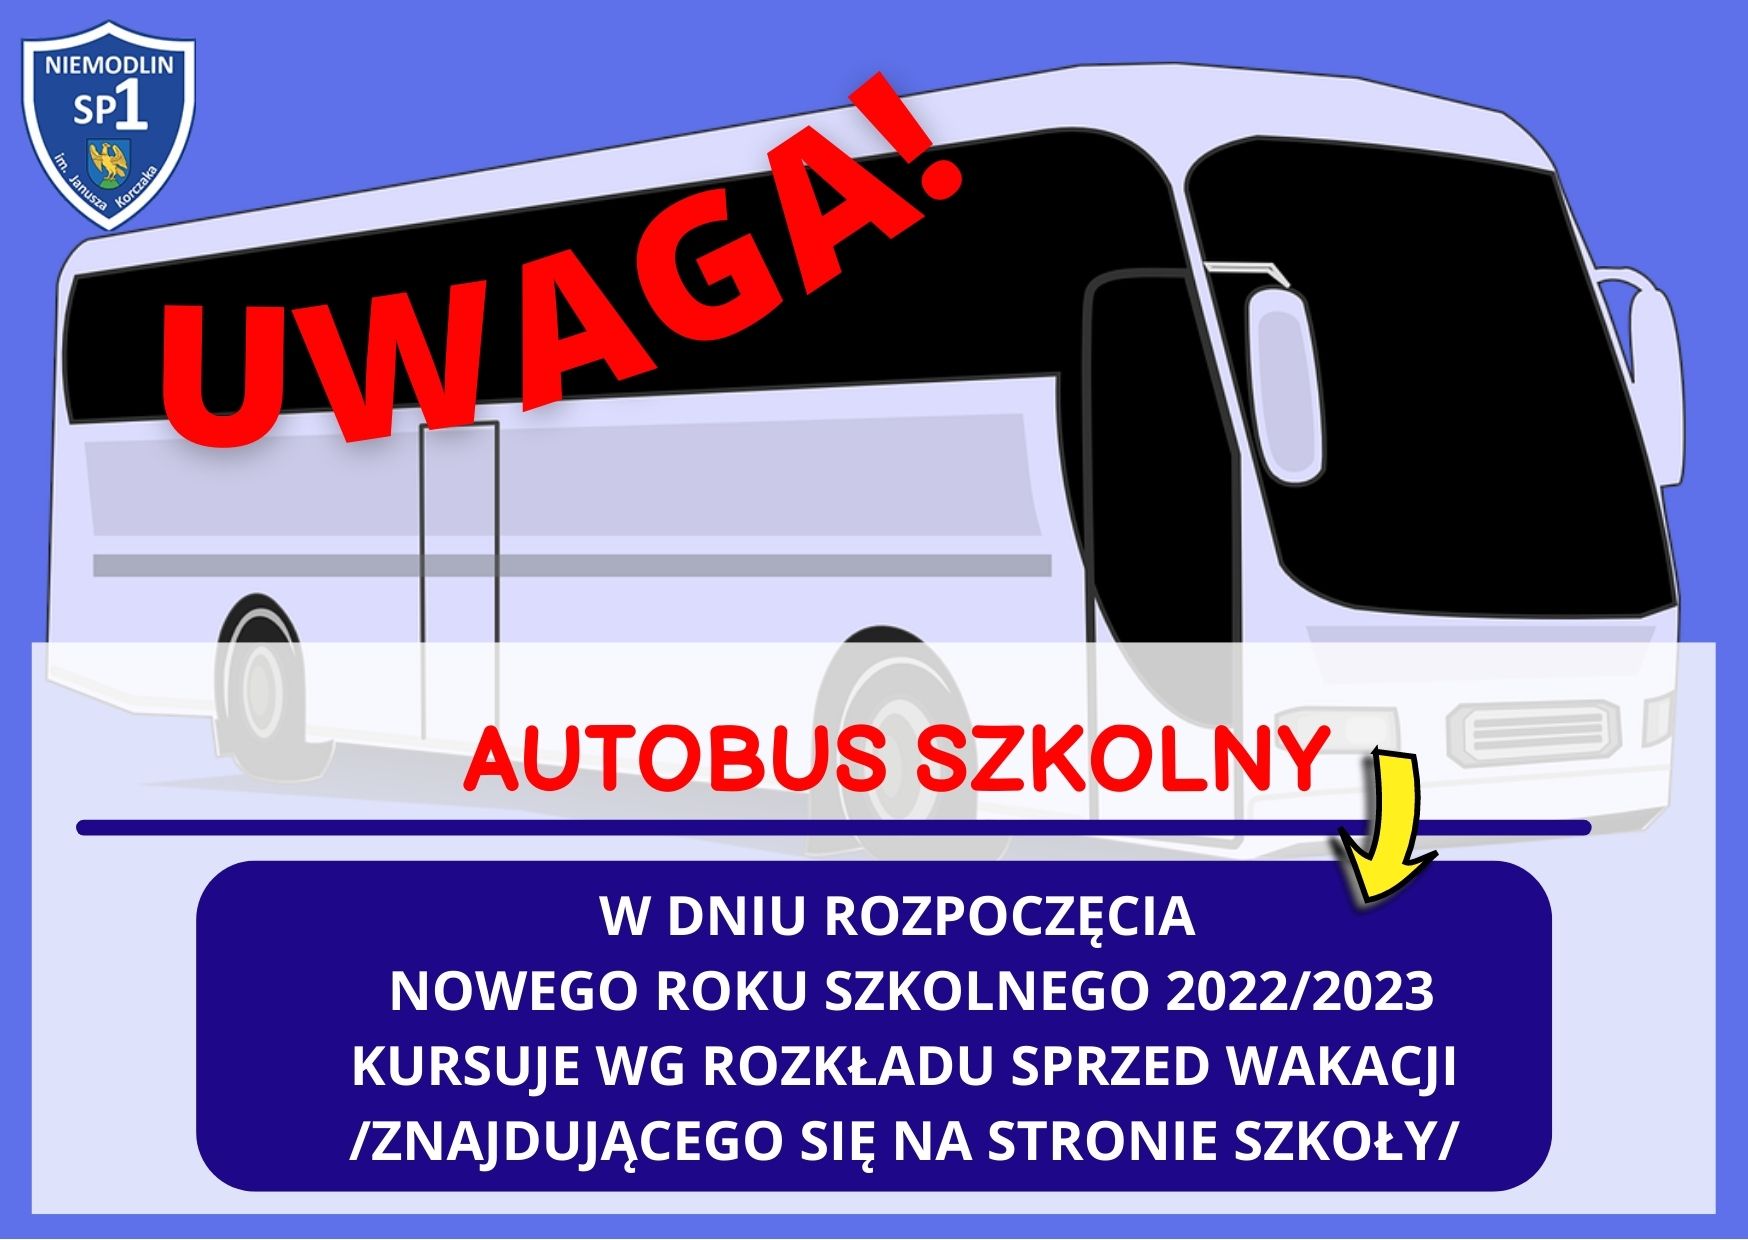 Informacja dla uczniów dojeżdżających autobusem szkolnym